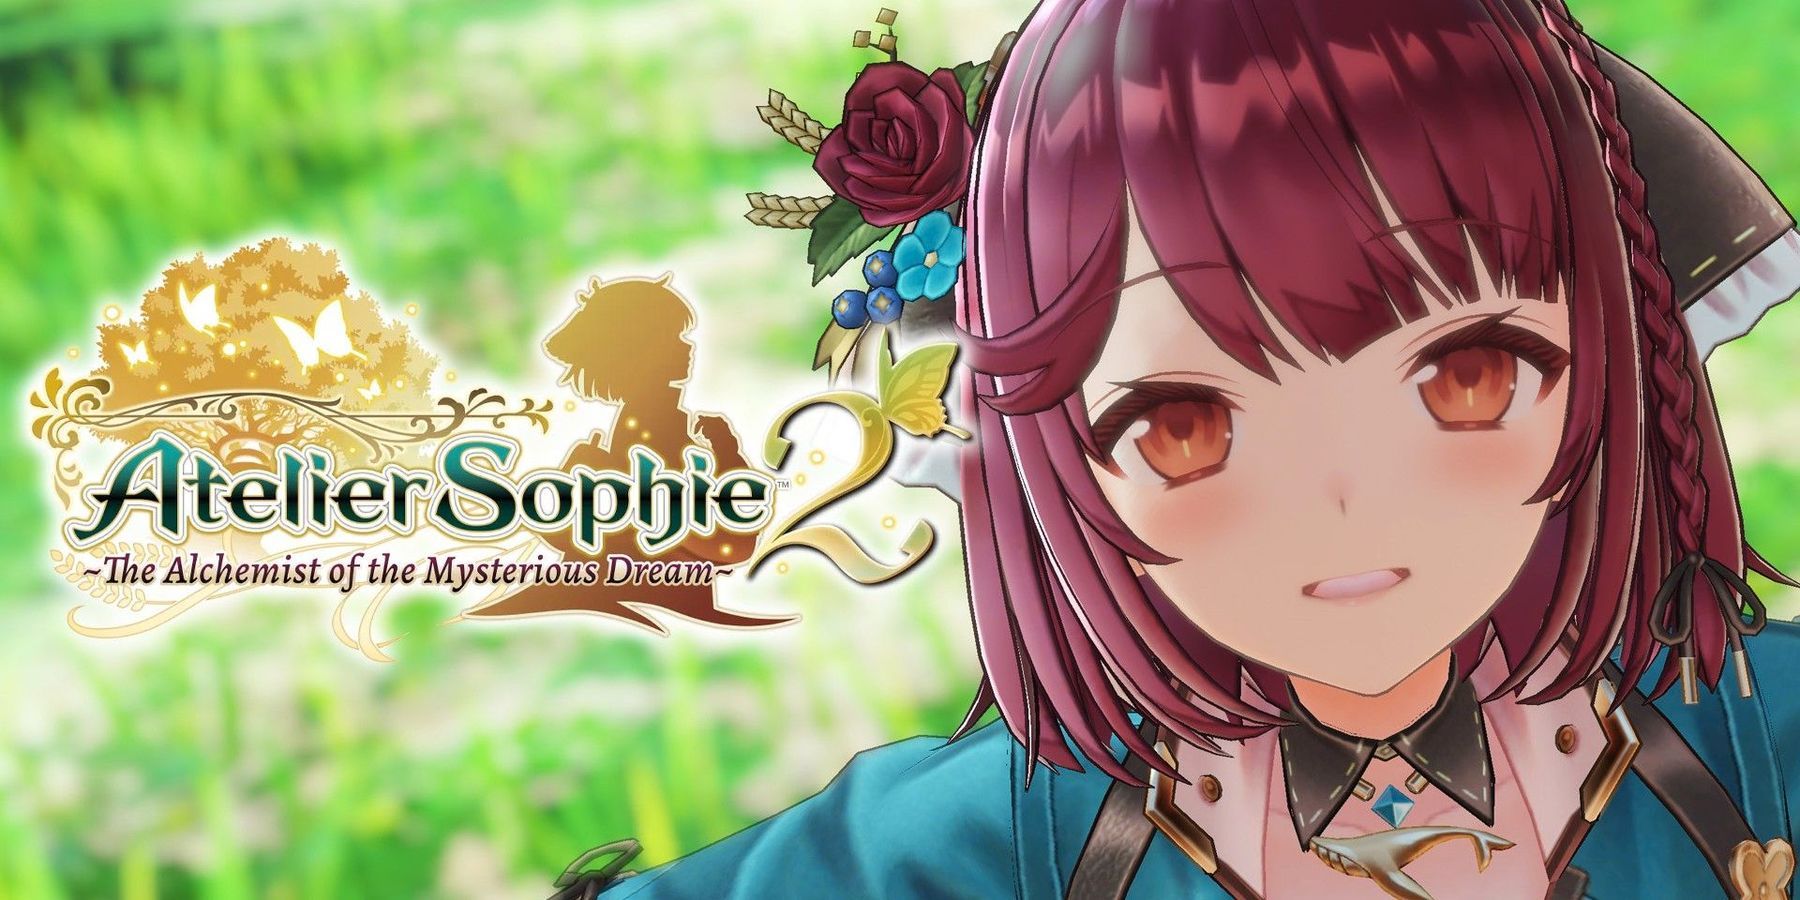 Atelier Sophie 2 officielt annonceret af Koei Tecmo med udgivelse i februar 2022